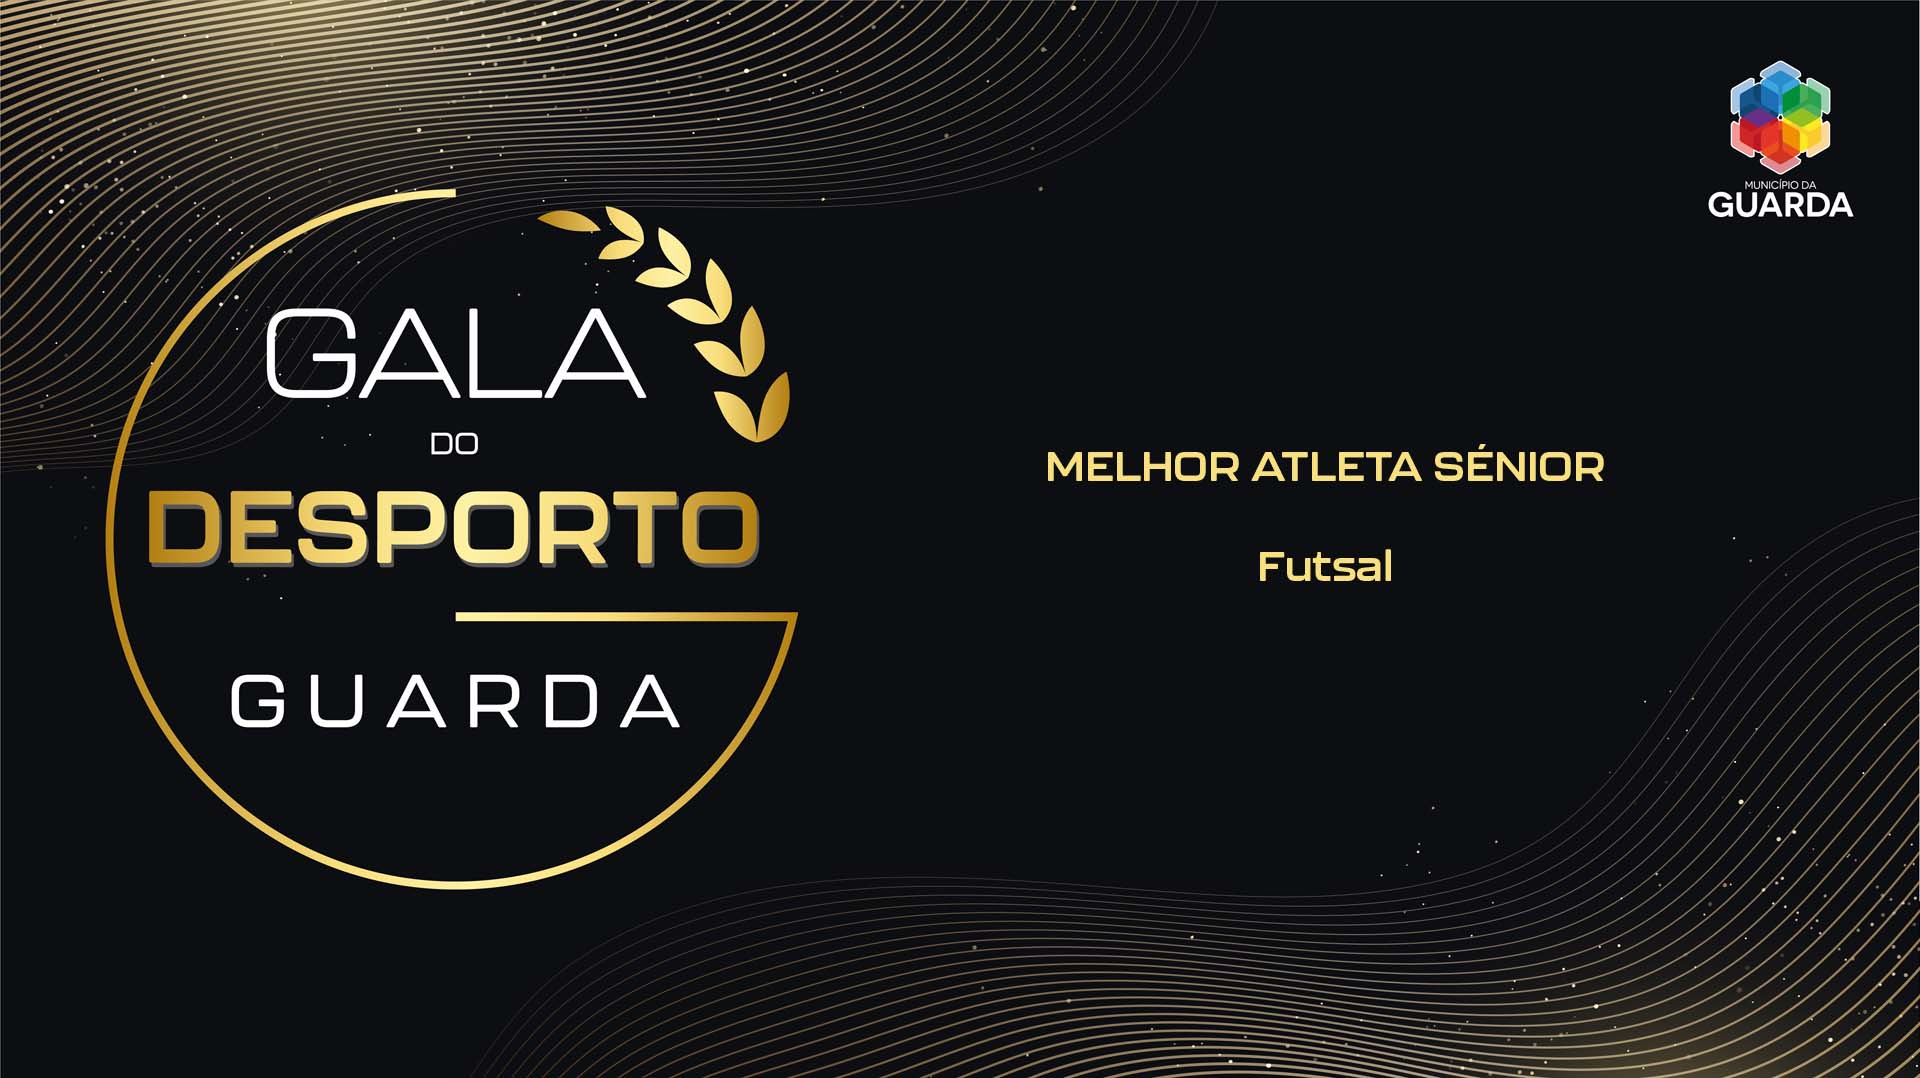 Categoria: MELHOR ATLETA SÉNIOR - Futsal